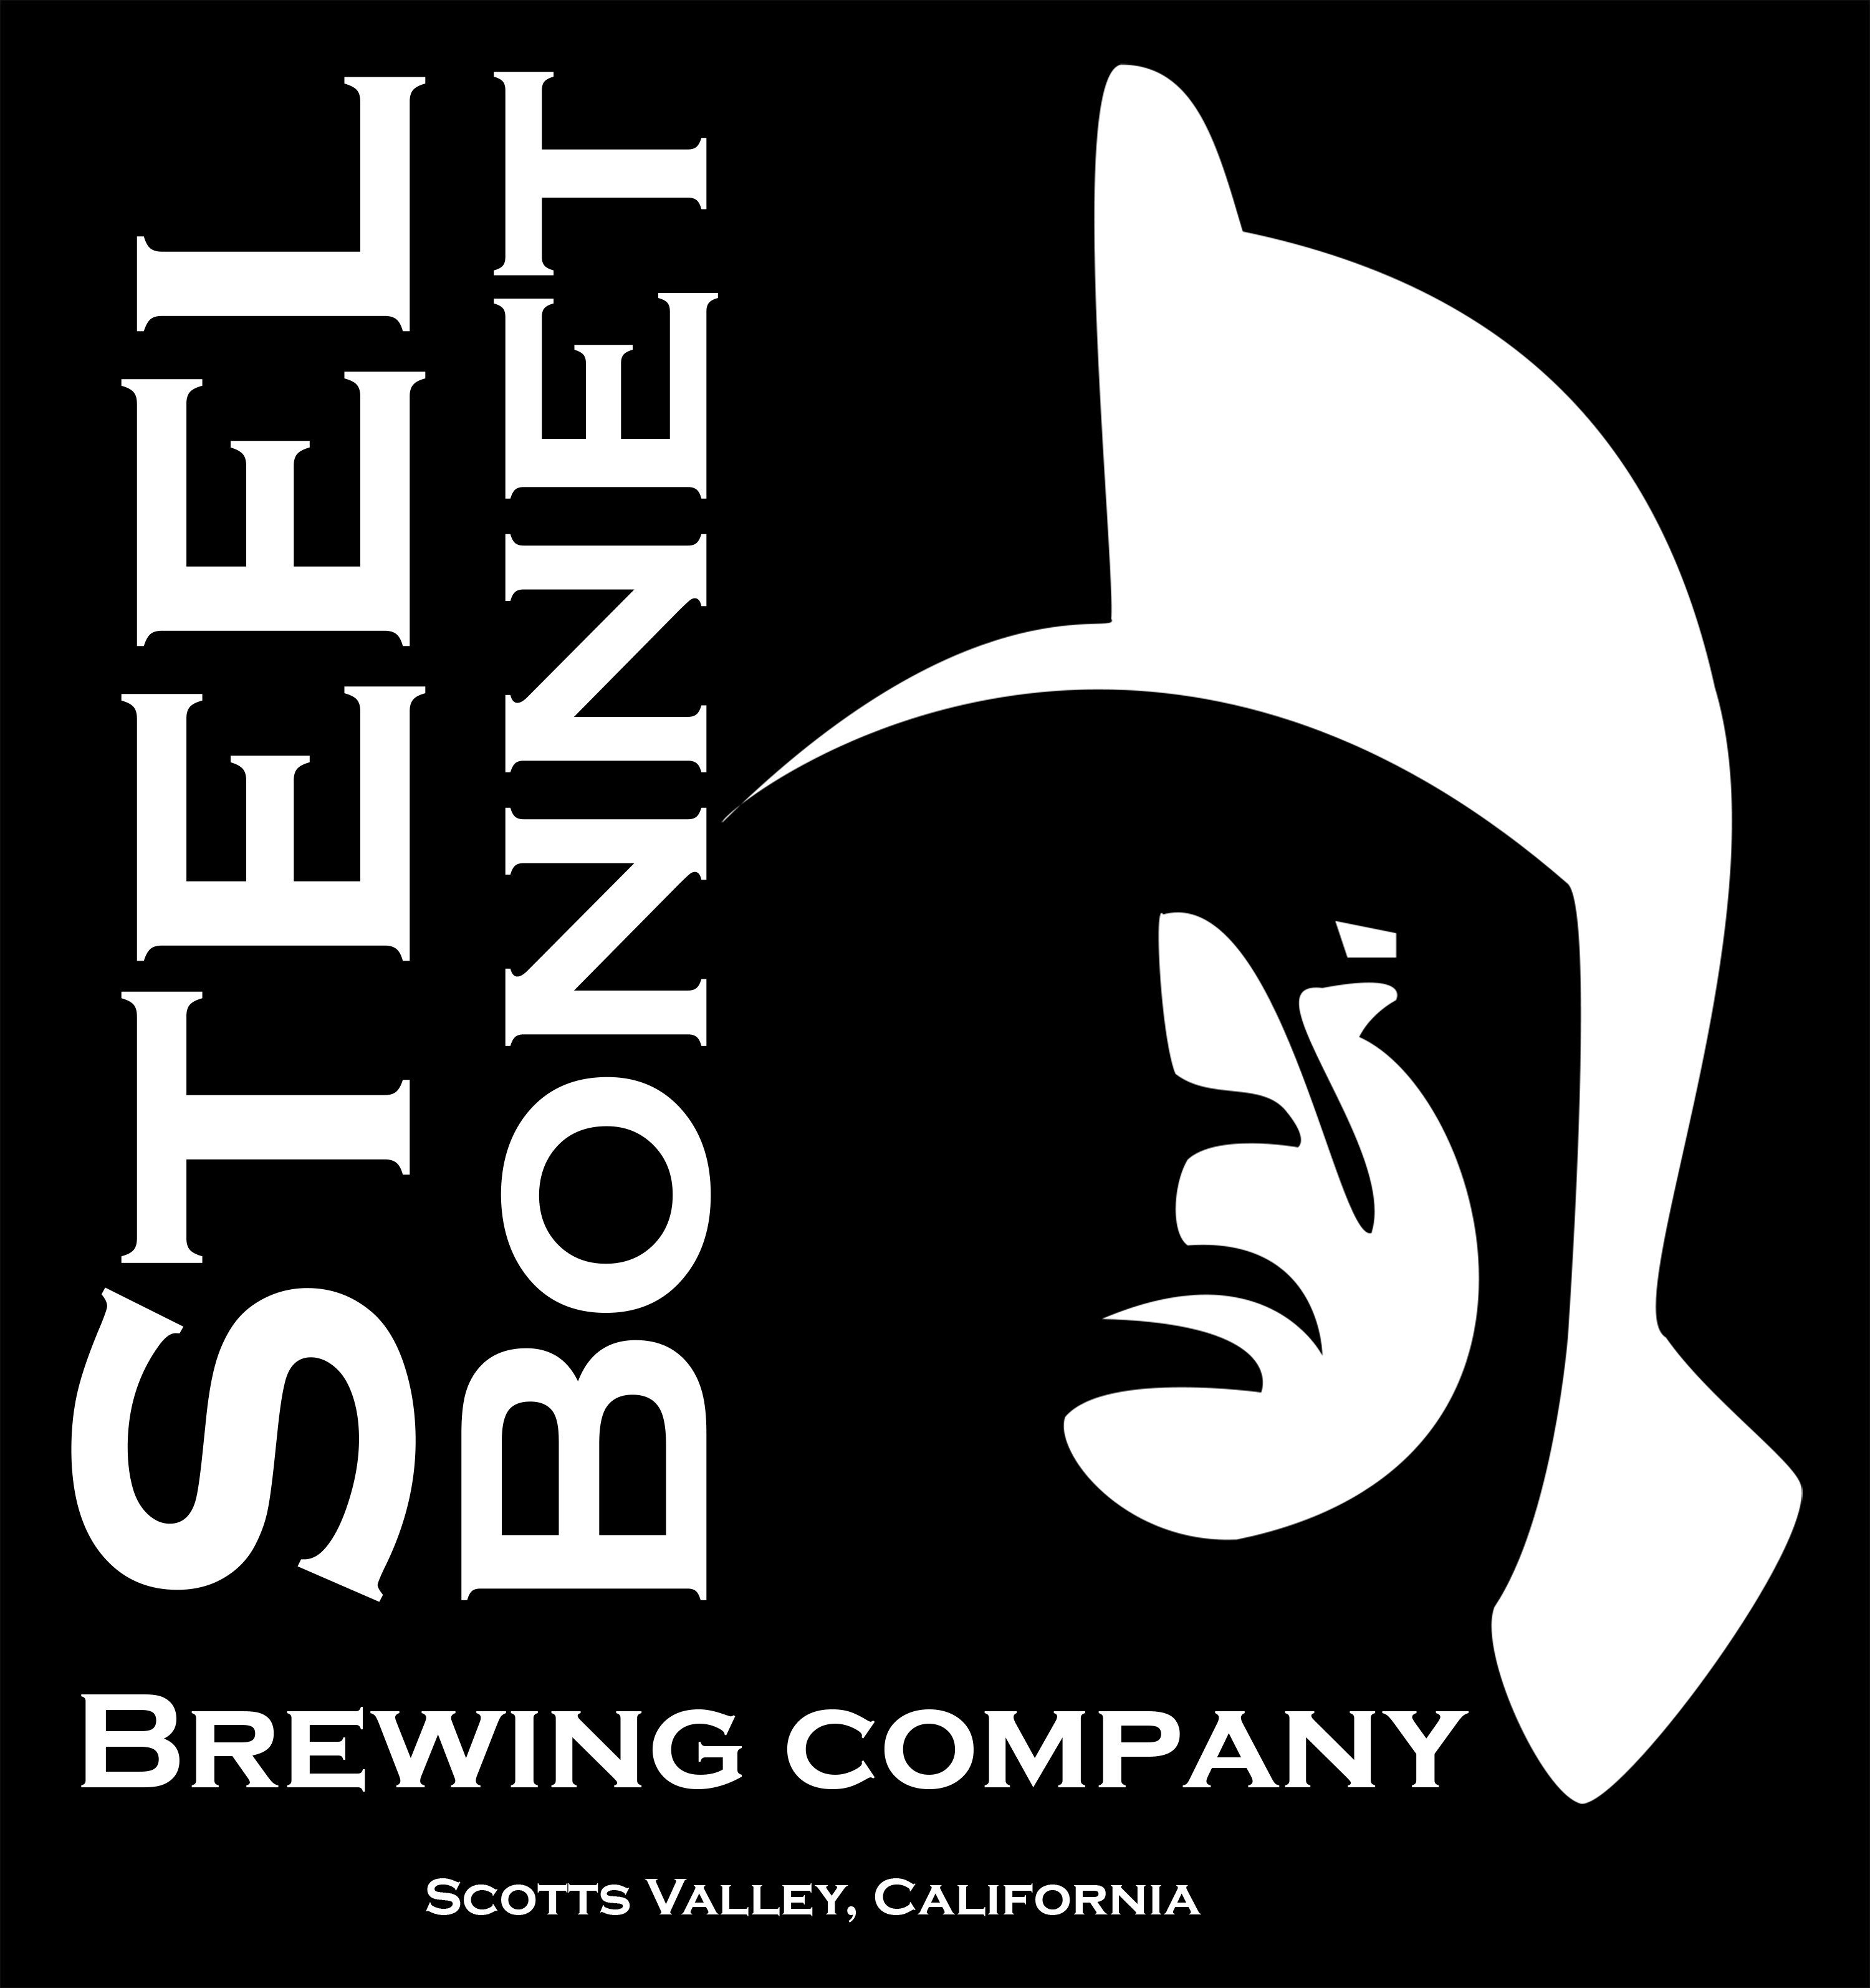 Steel Bonnet Brewing Company